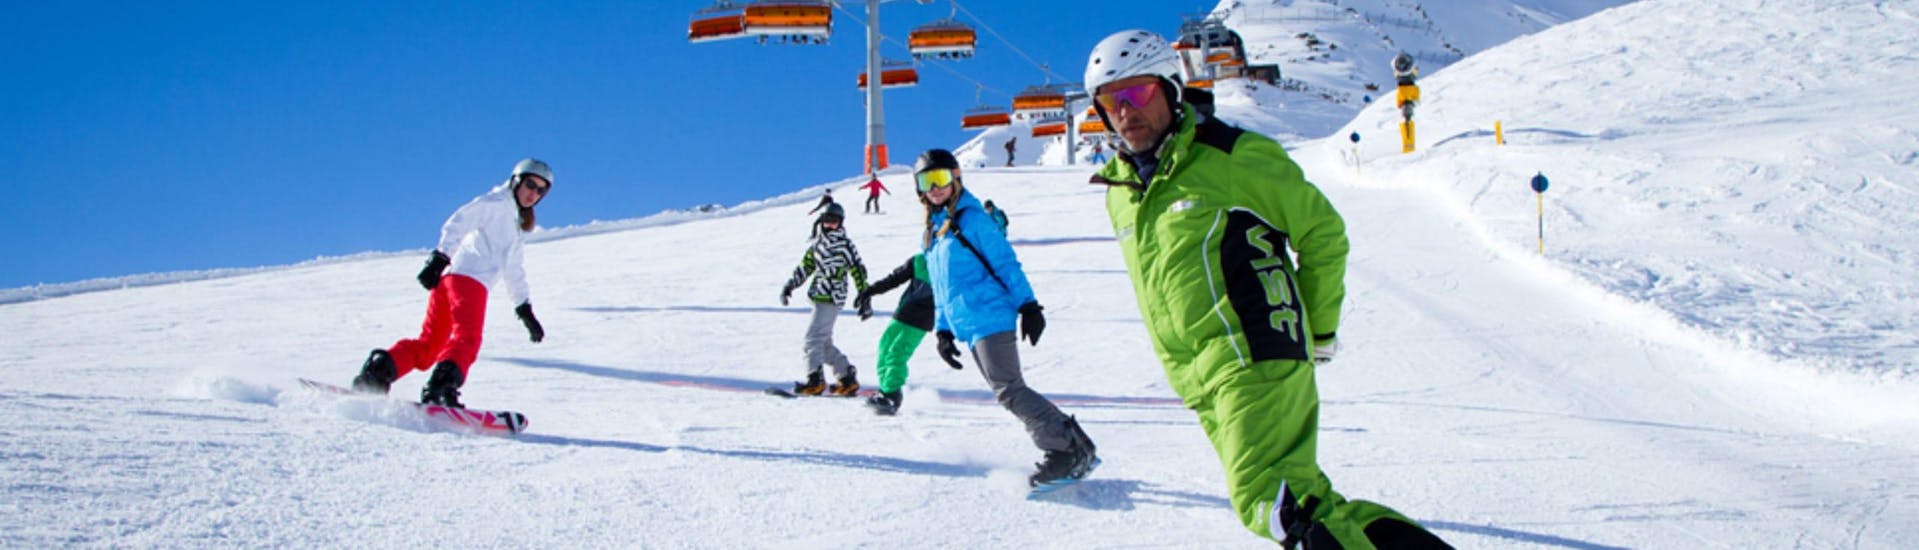 Snowboardlessen voor kinderen en volwassenen - Alle niveaus.